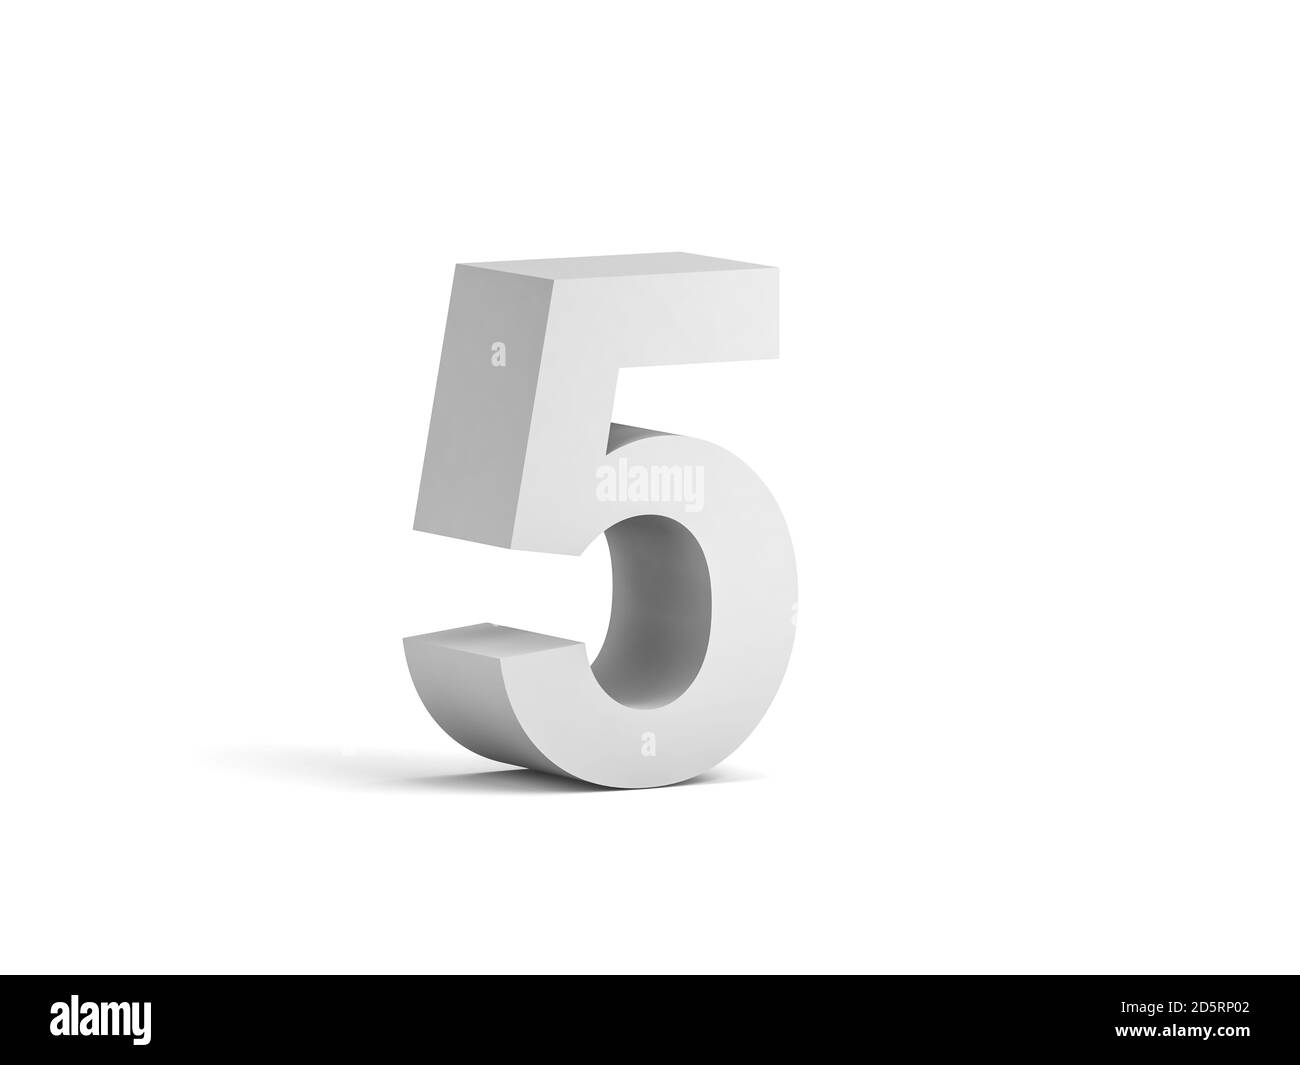 Cifra bianca in grassetto 5 isolata su sfondo bianco con ombreggiatura morbida, rappresentazione 3d Foto Stock